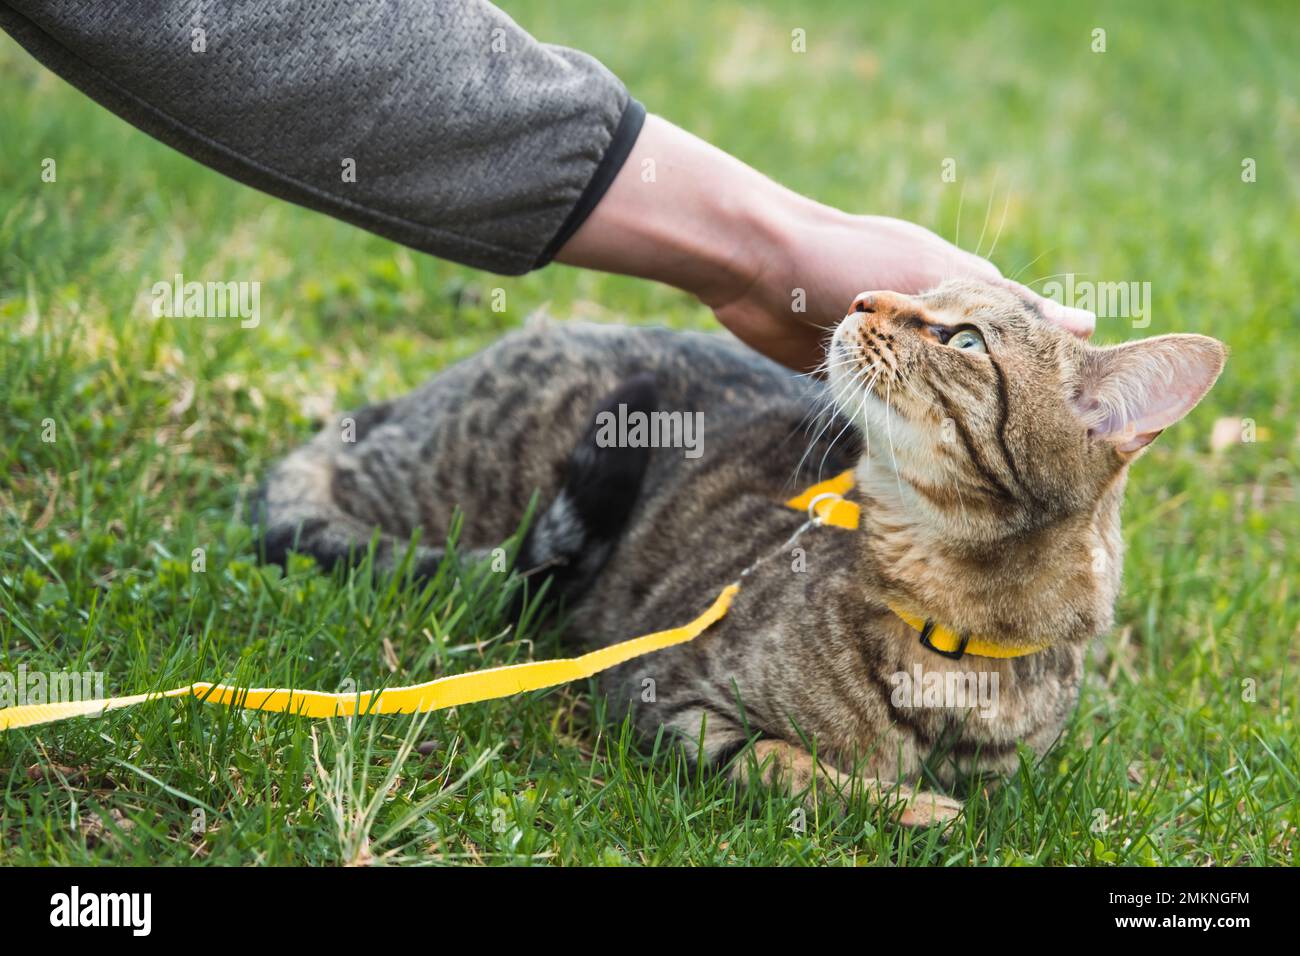 Mit einer Hauskatze mit dem Besitzer an einem gelben Gurtzeug spazieren gehen. Die Tabby Katze, die die Hand eines Menschen im Freien streichelt, versteckt sich im grünen Gras, vorsichtig und Stockfoto